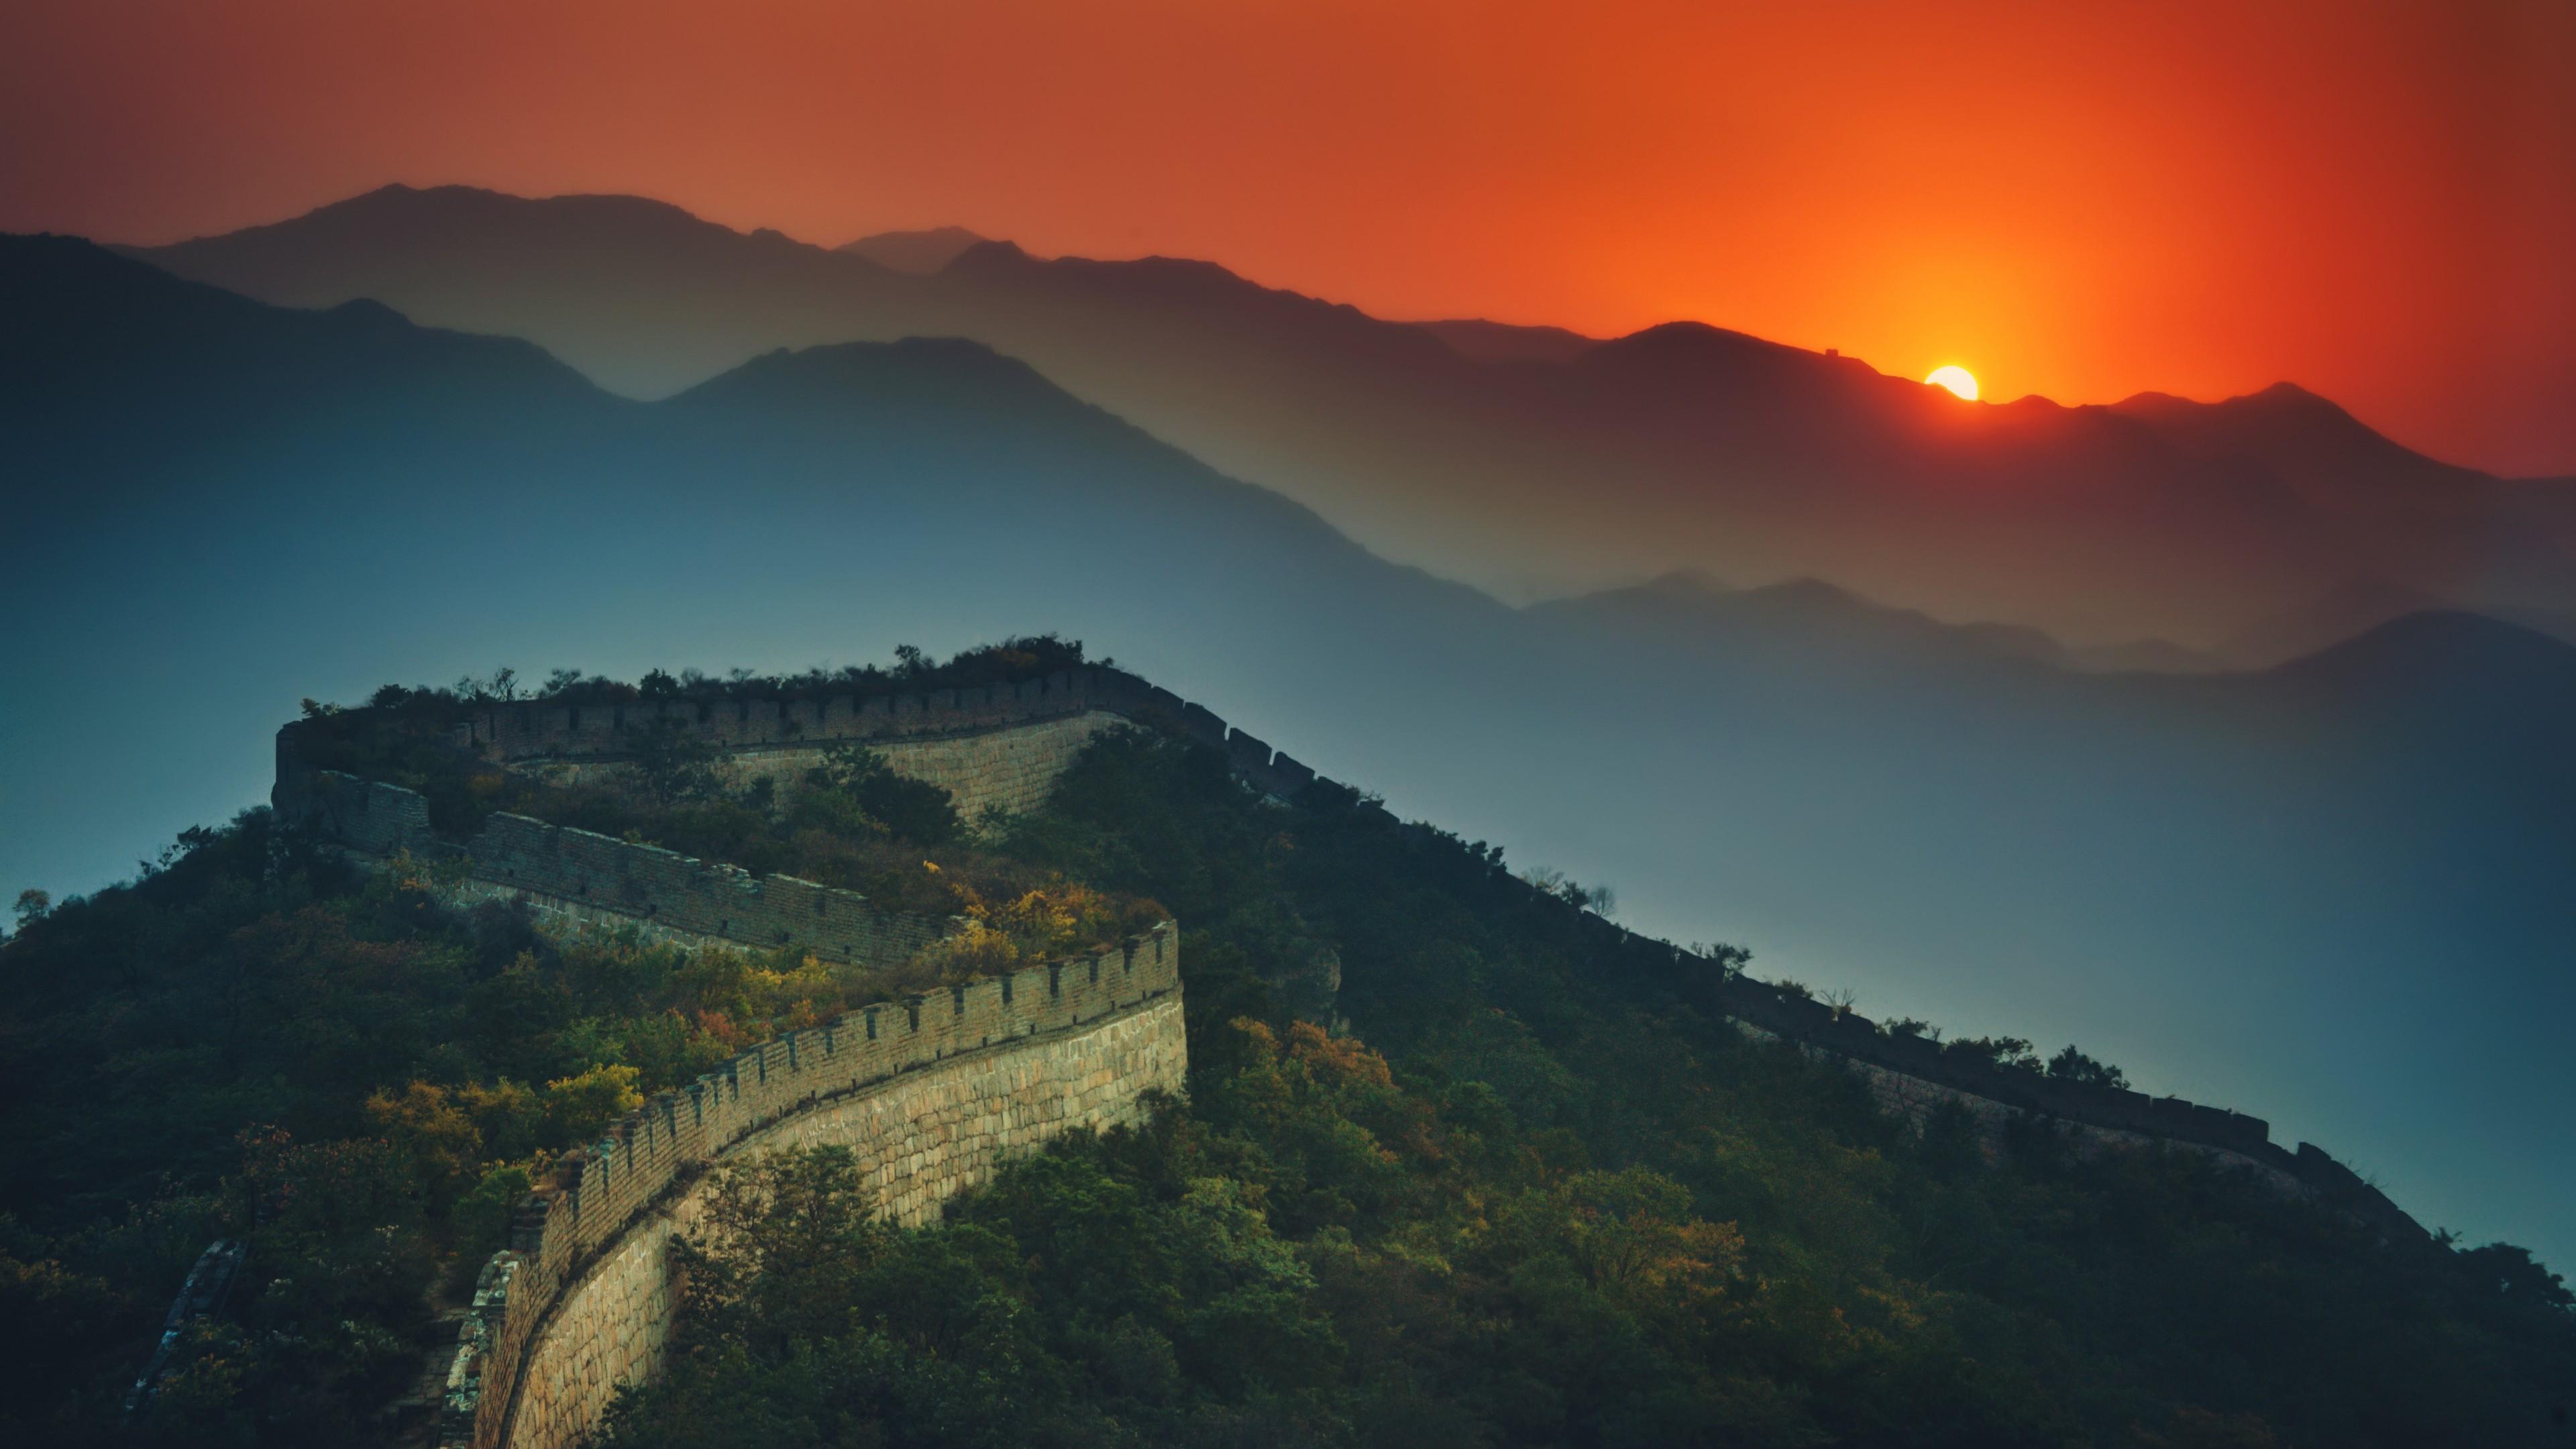 Great Wall Of China At Sunset 4K UltraHD Wallpaper. Wallpaper